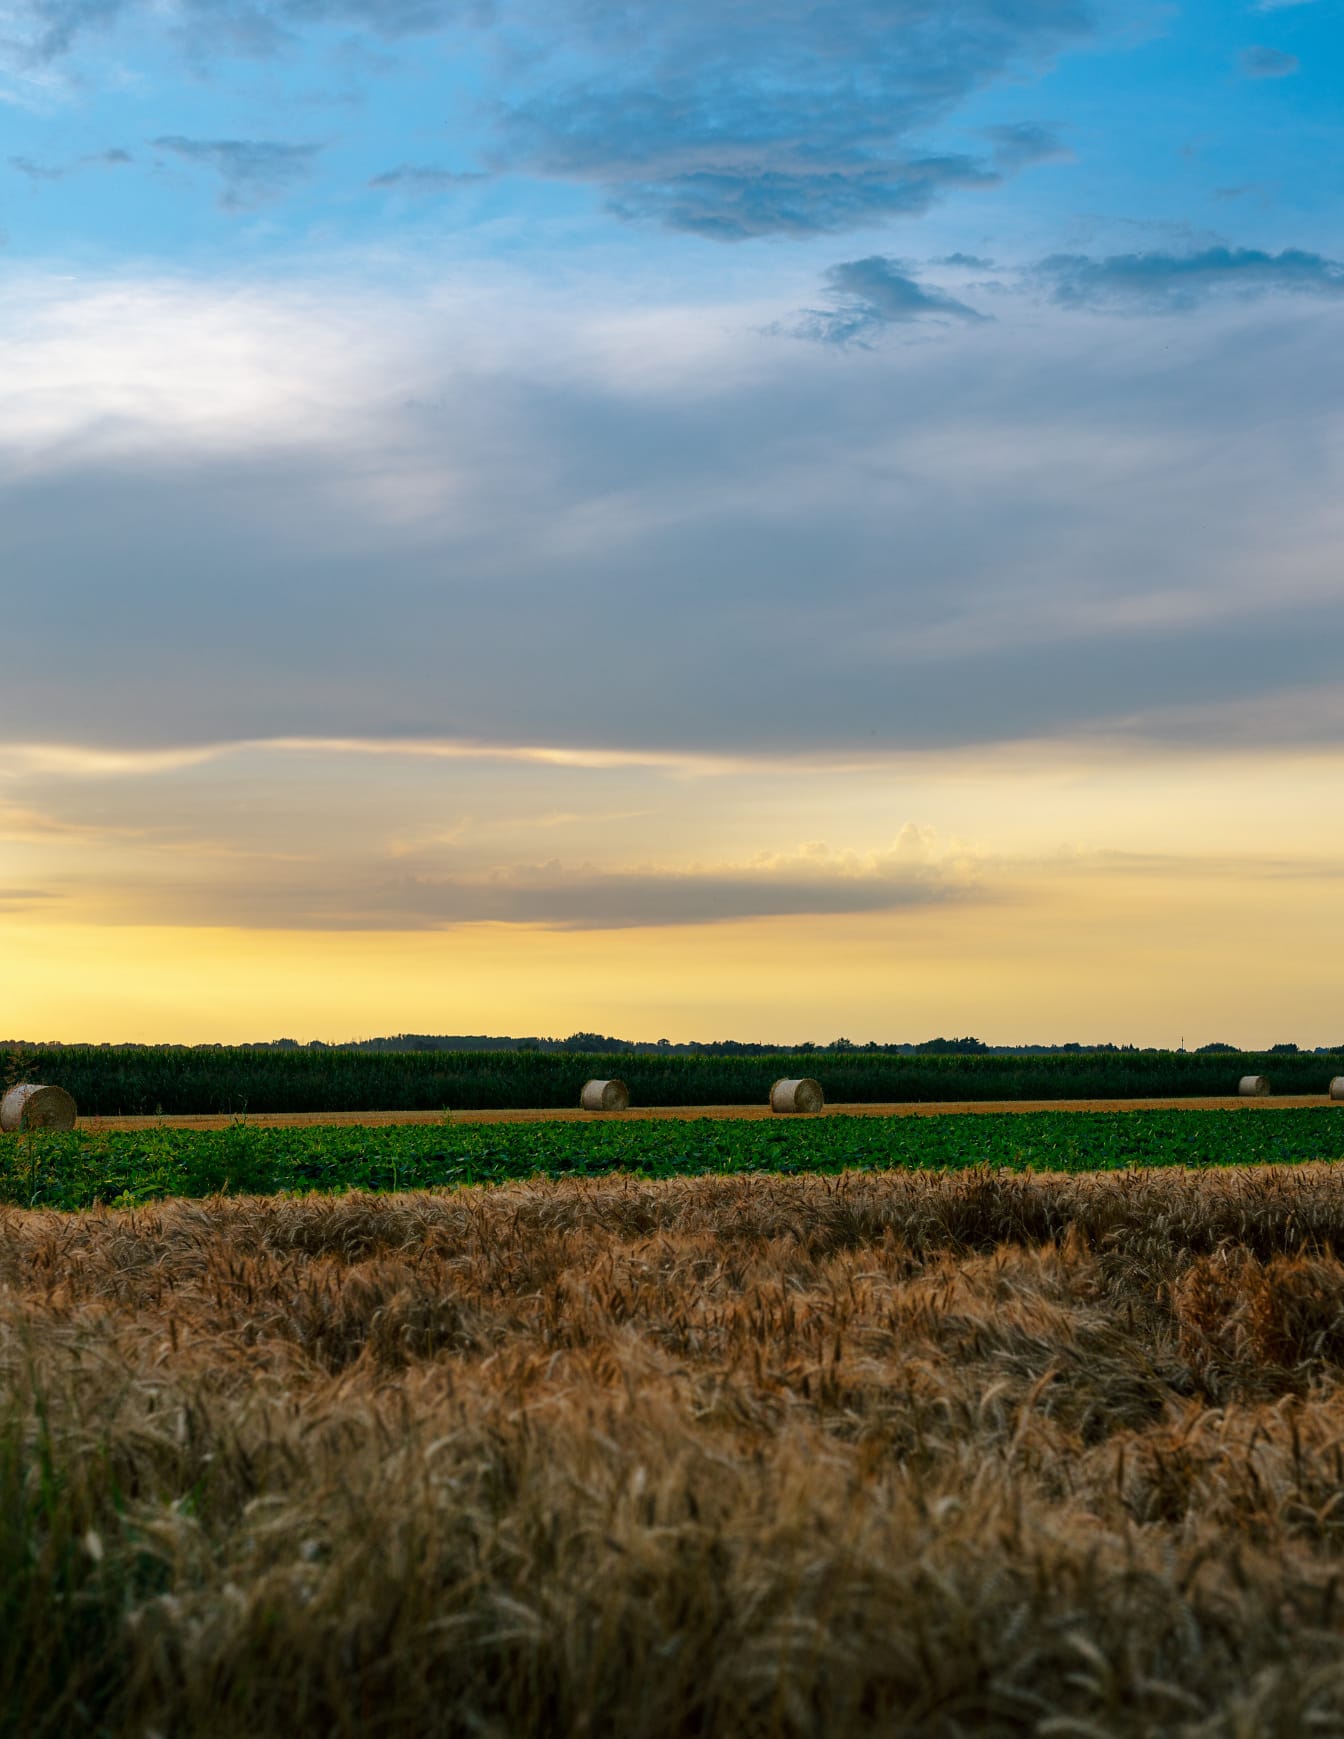 Árpamező és sík szójaföld, háttérben kukoricatáblával